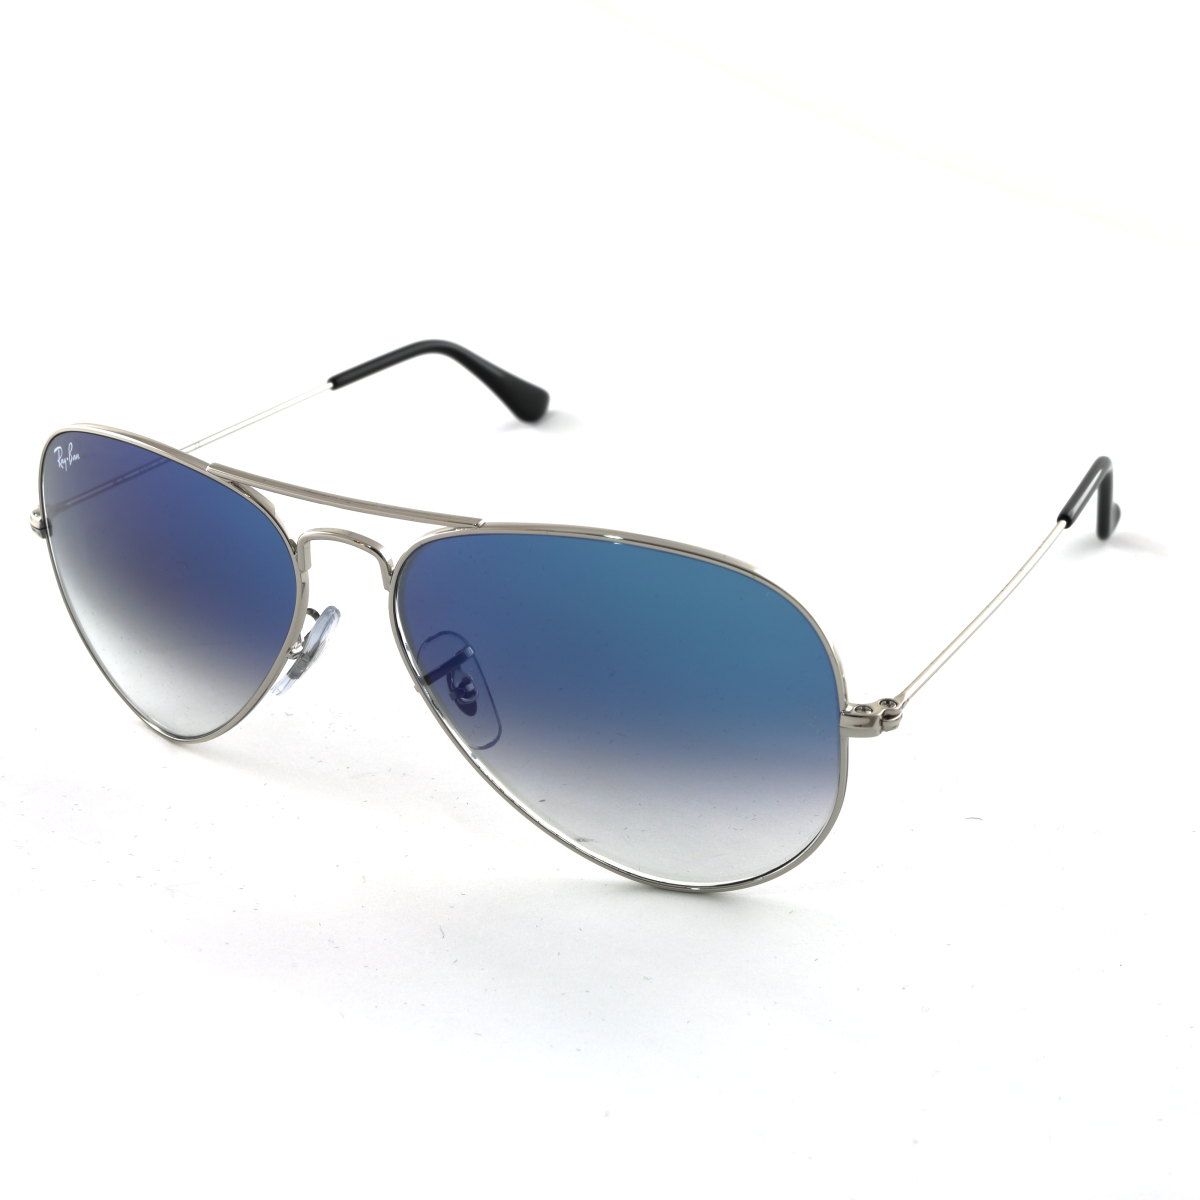 Aviator Sunglasses RB3025 003 3F - size 58